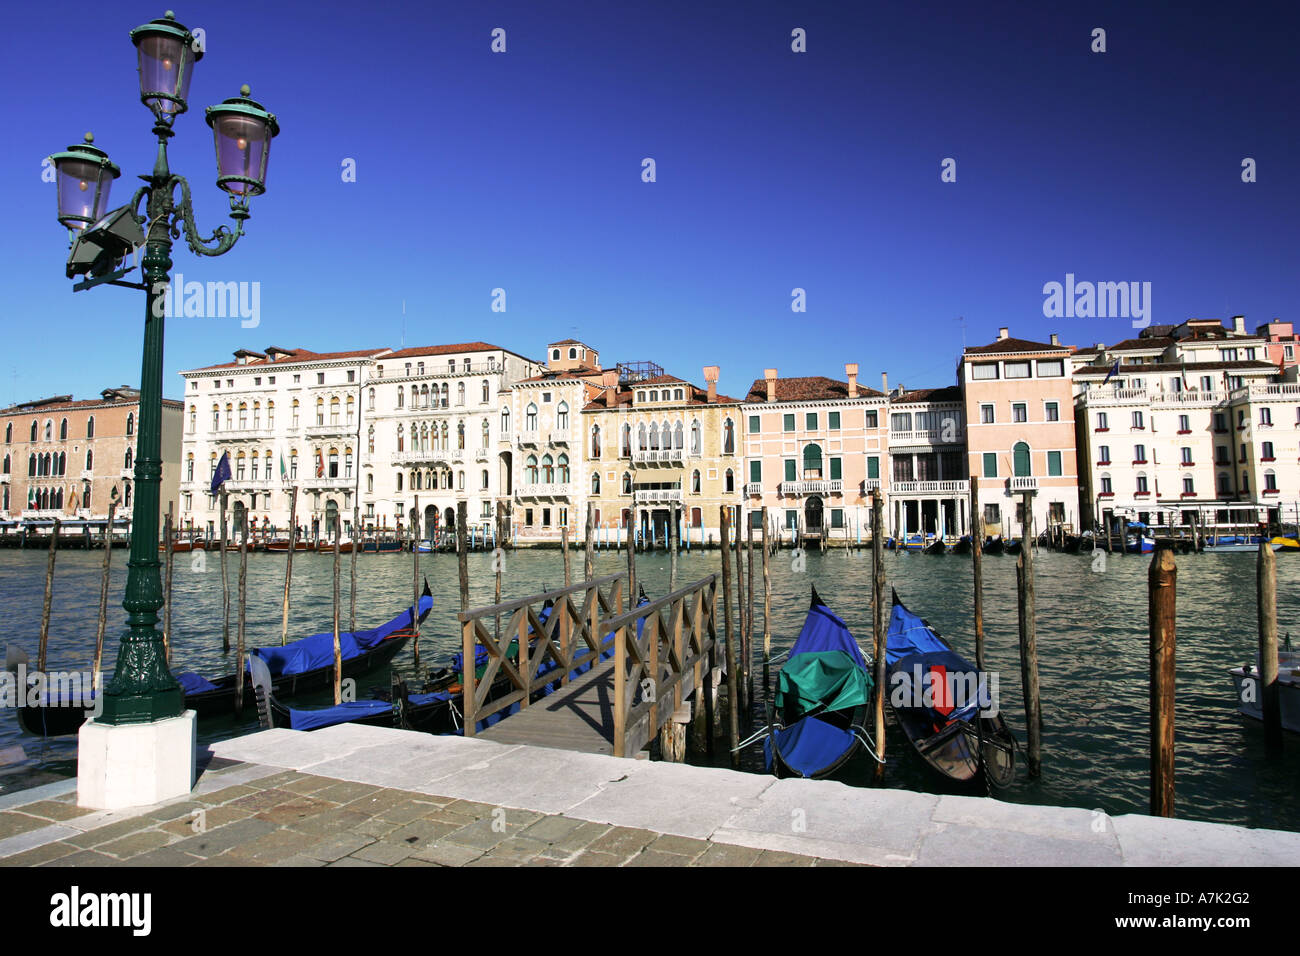 Typische Ansicht der venezianischen Gondeln auf dem Canal Grande in der Nähe von Markusplatz mit reich verzierten eisernen Lampe post Venedig Italien Europa EU Stockfoto